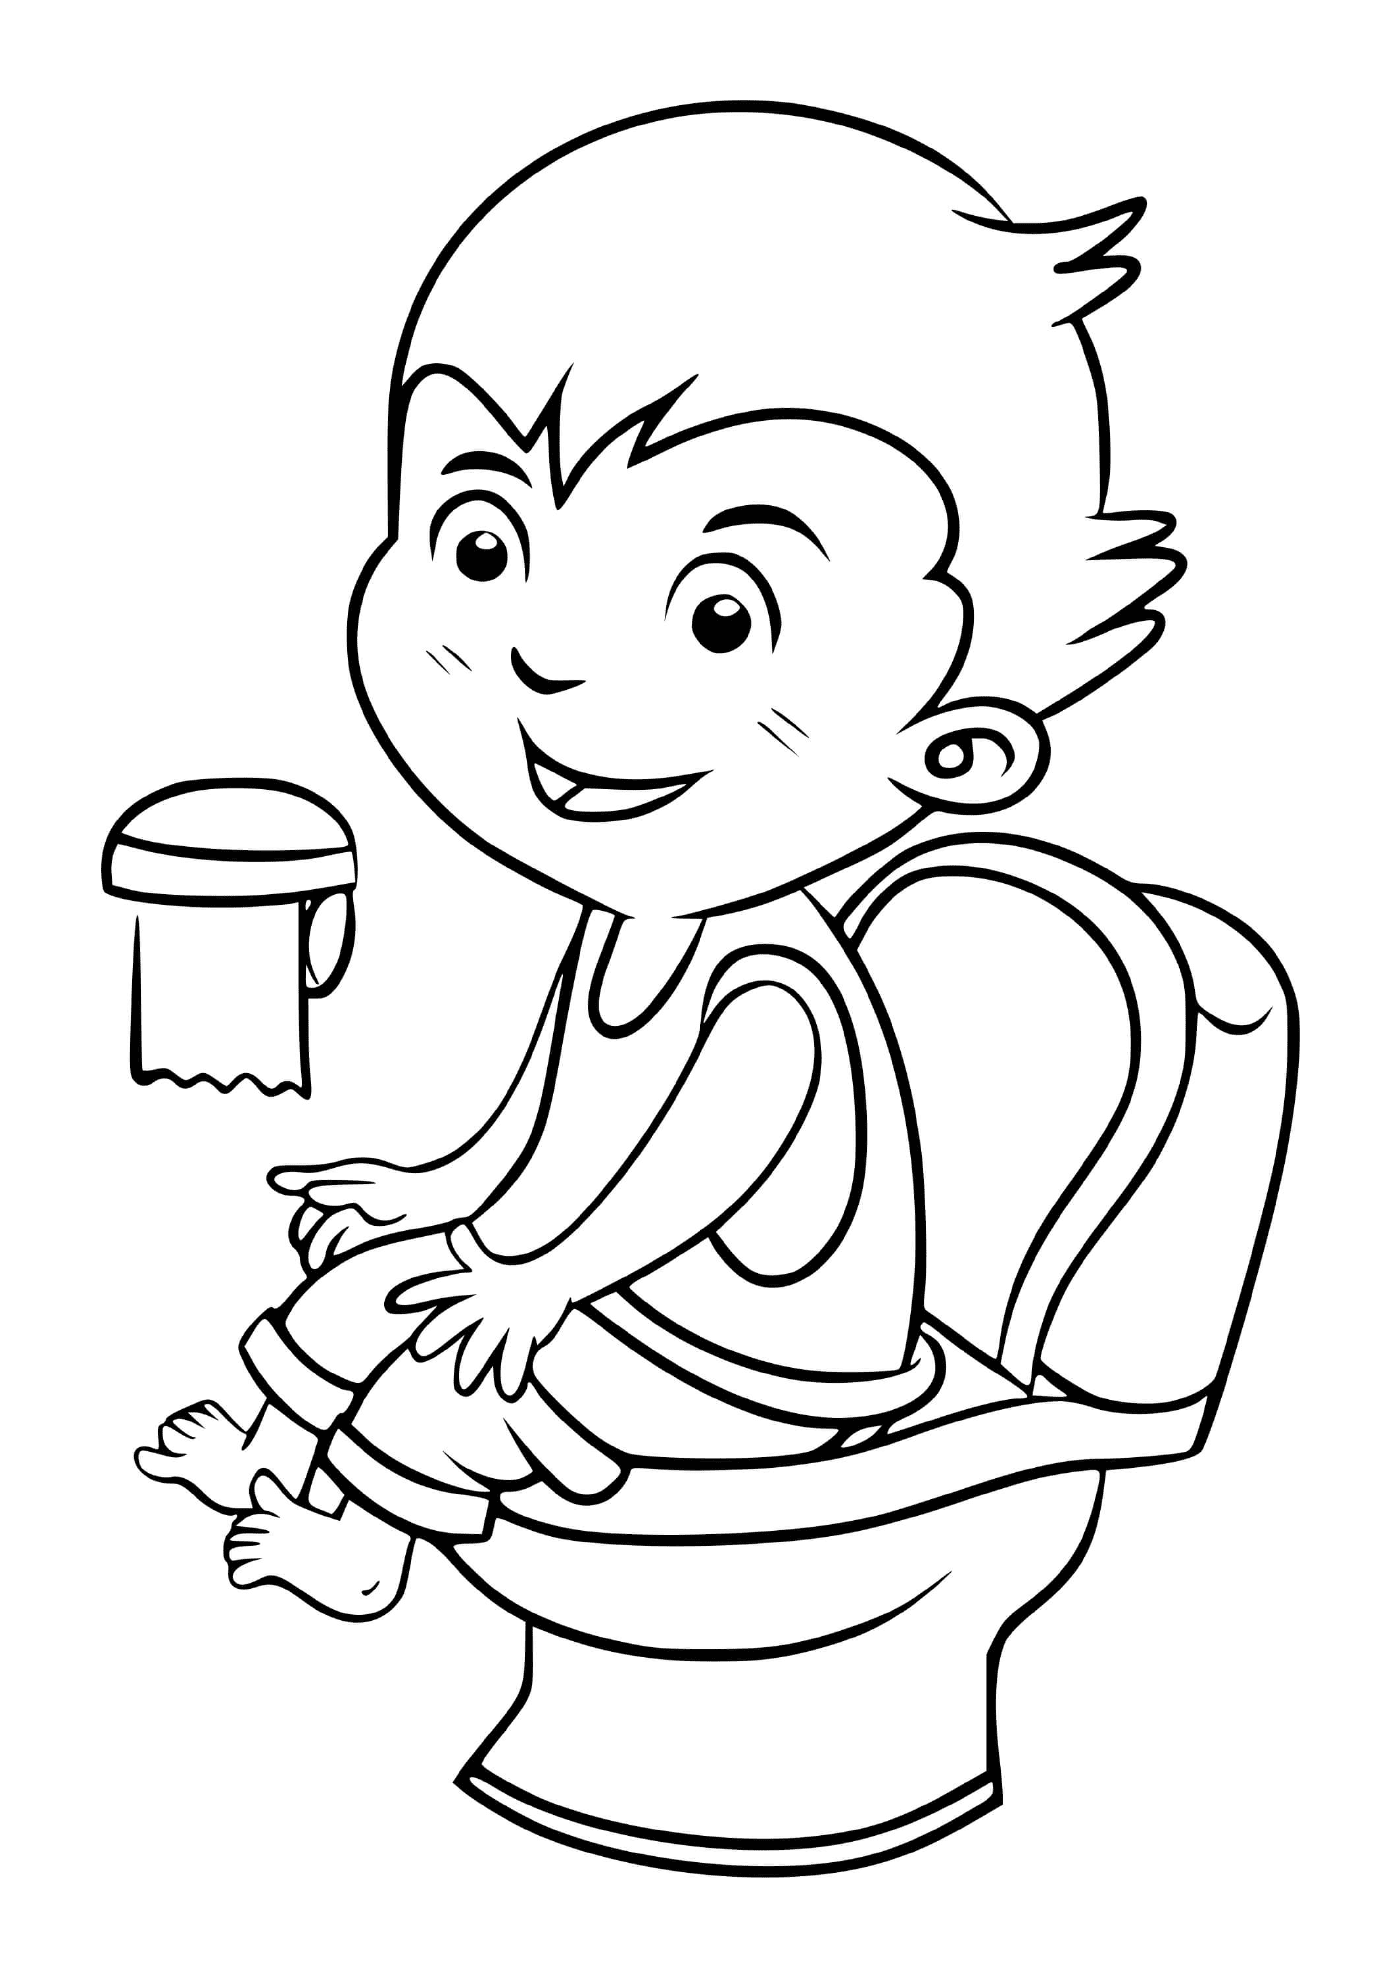   Un enfant va aux toilettes pour rester propre 